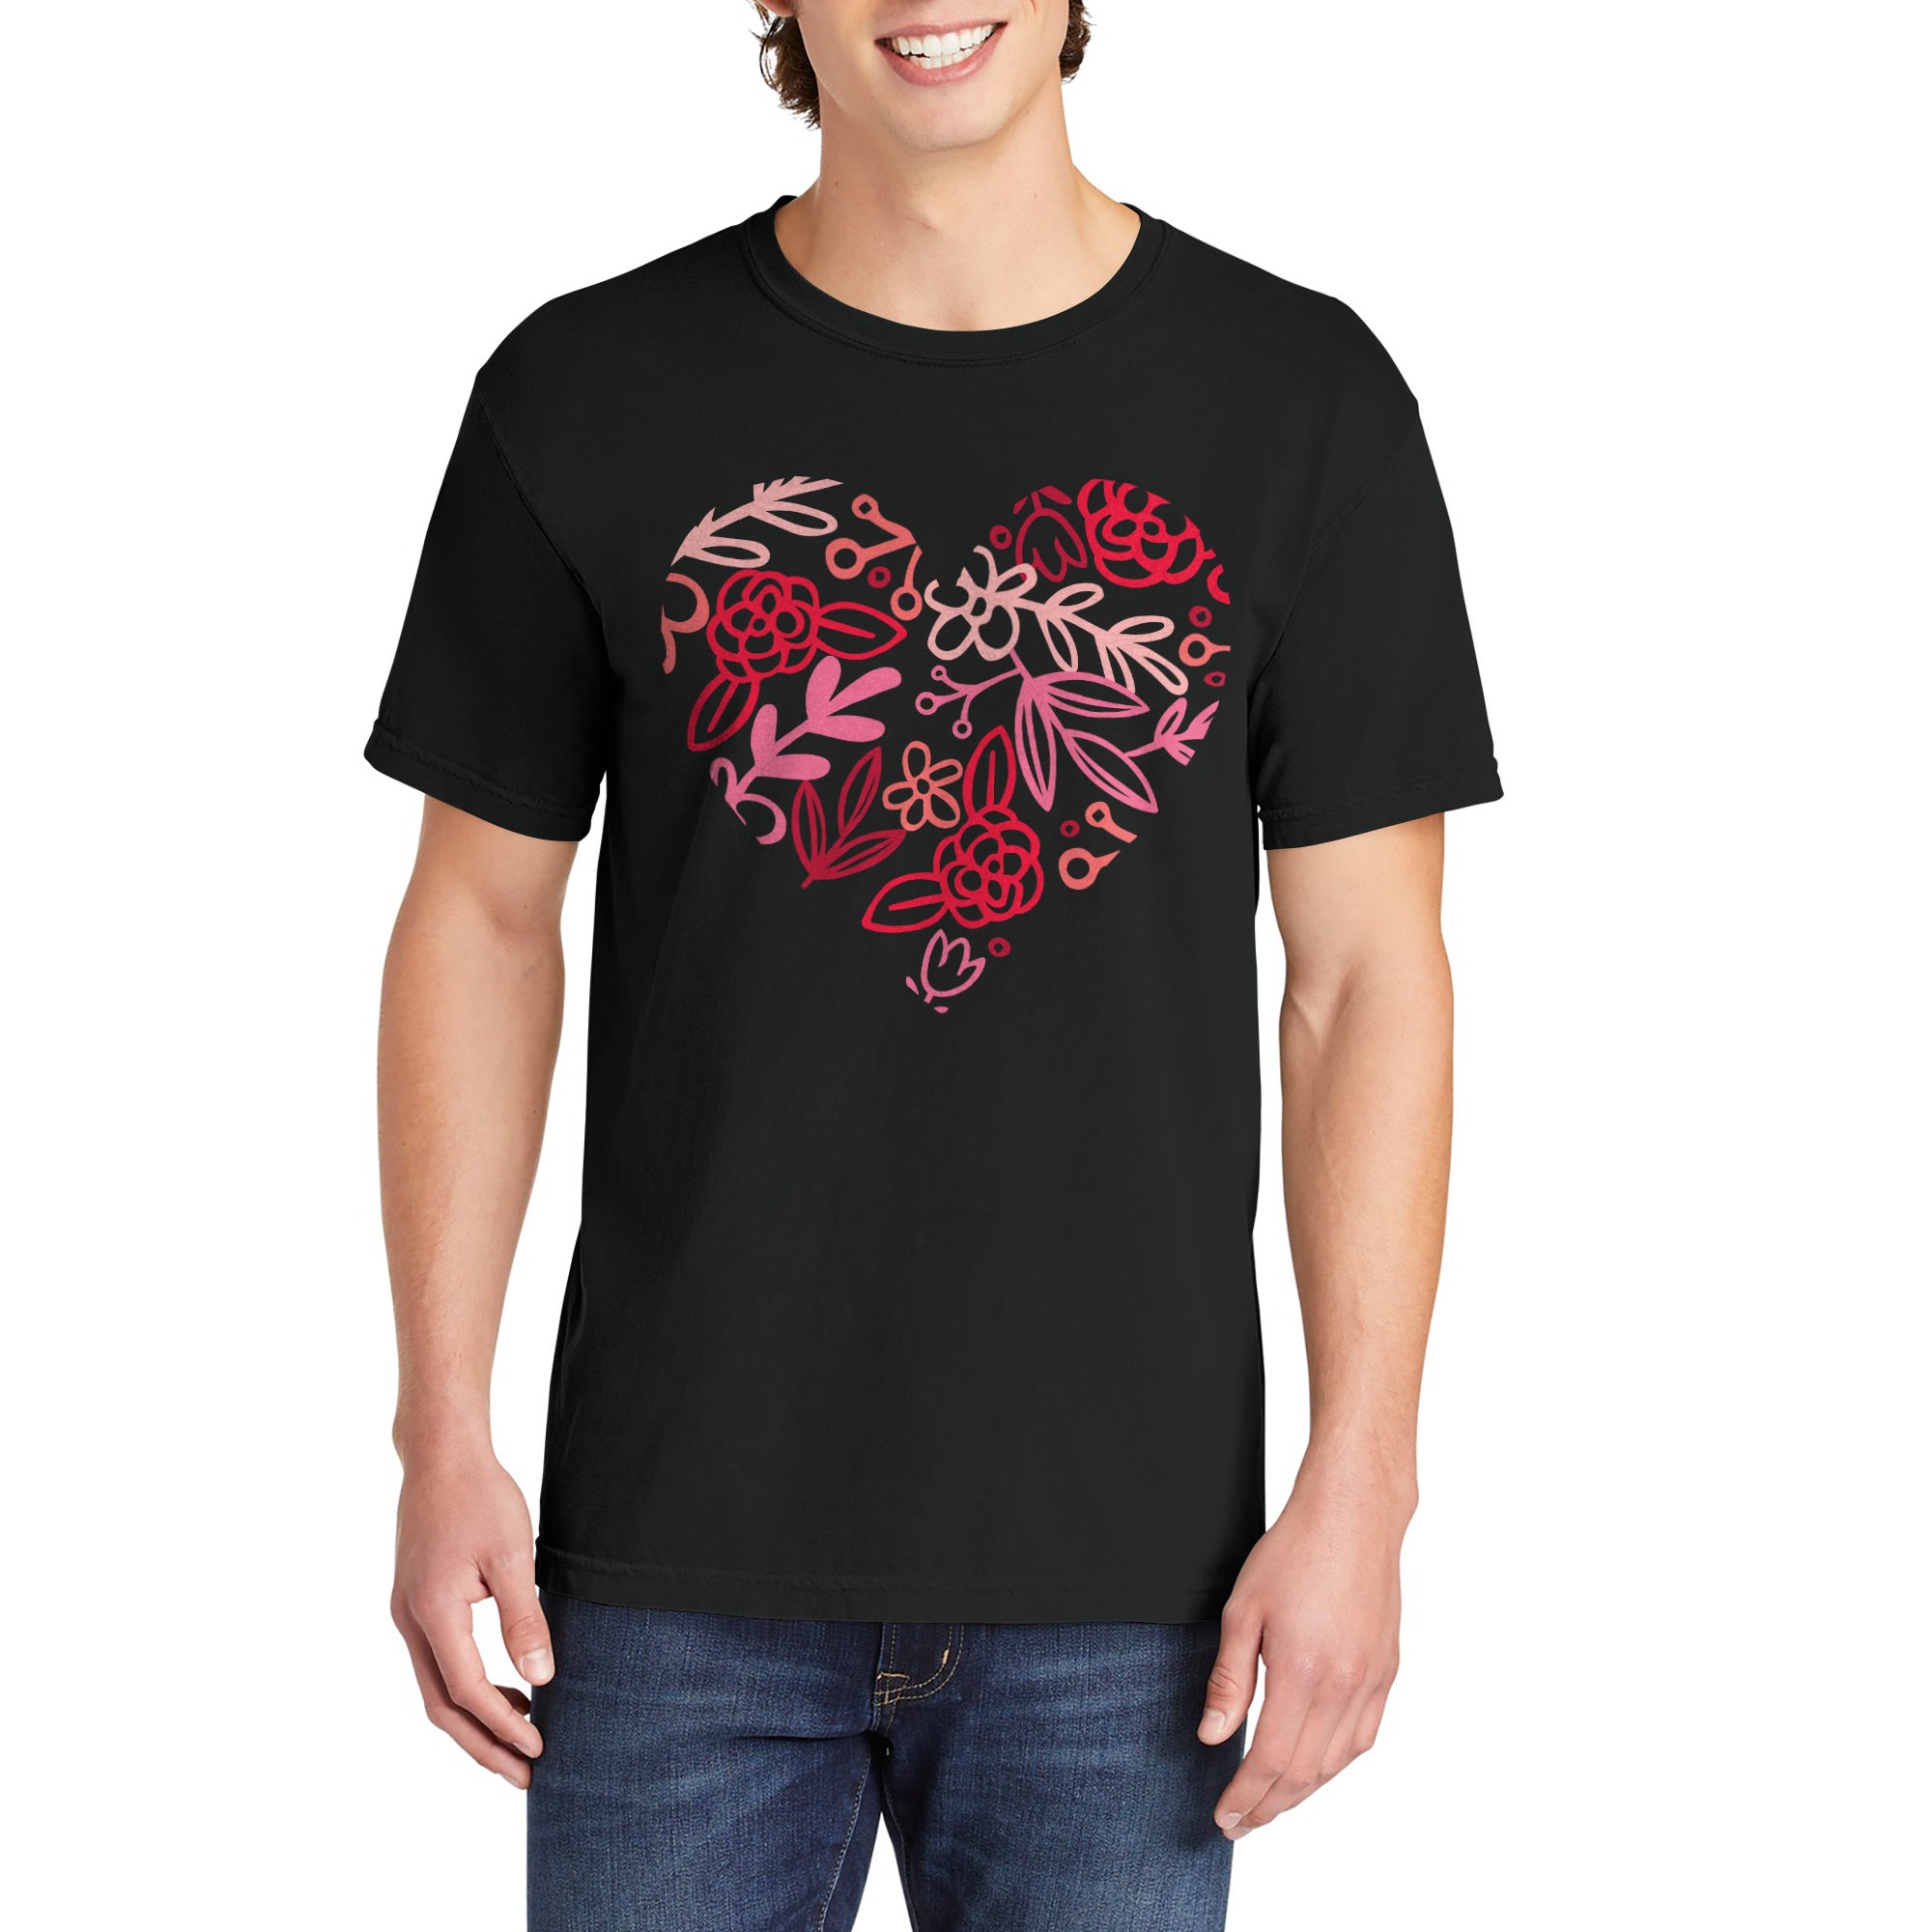 Floral Heart Shirt Garment-Dyed Tee